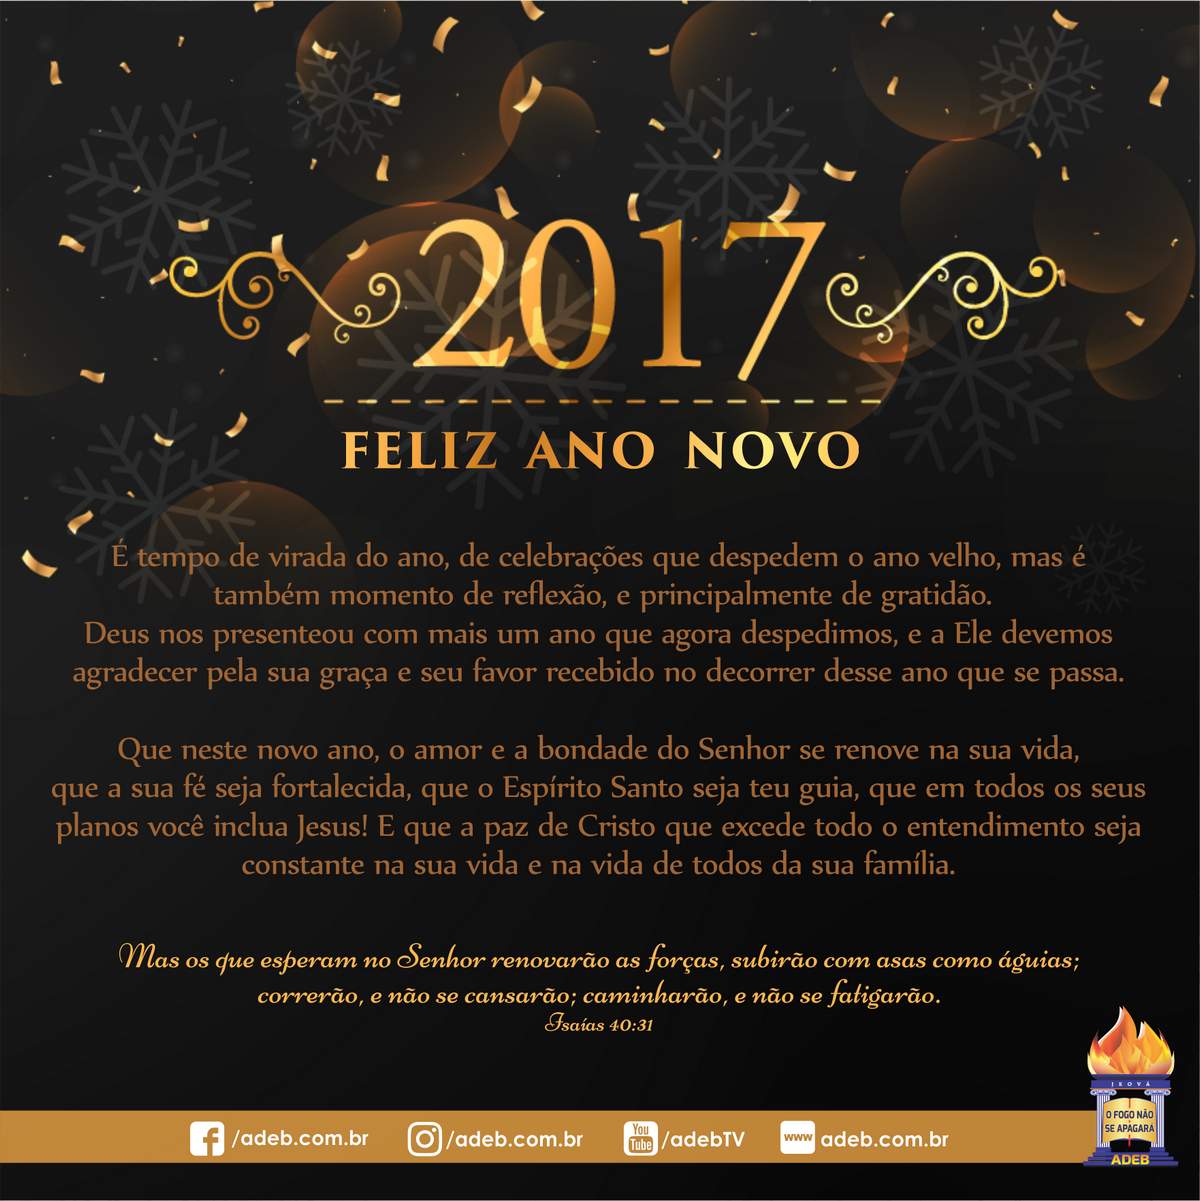 Feliz Ano Novo - 2017